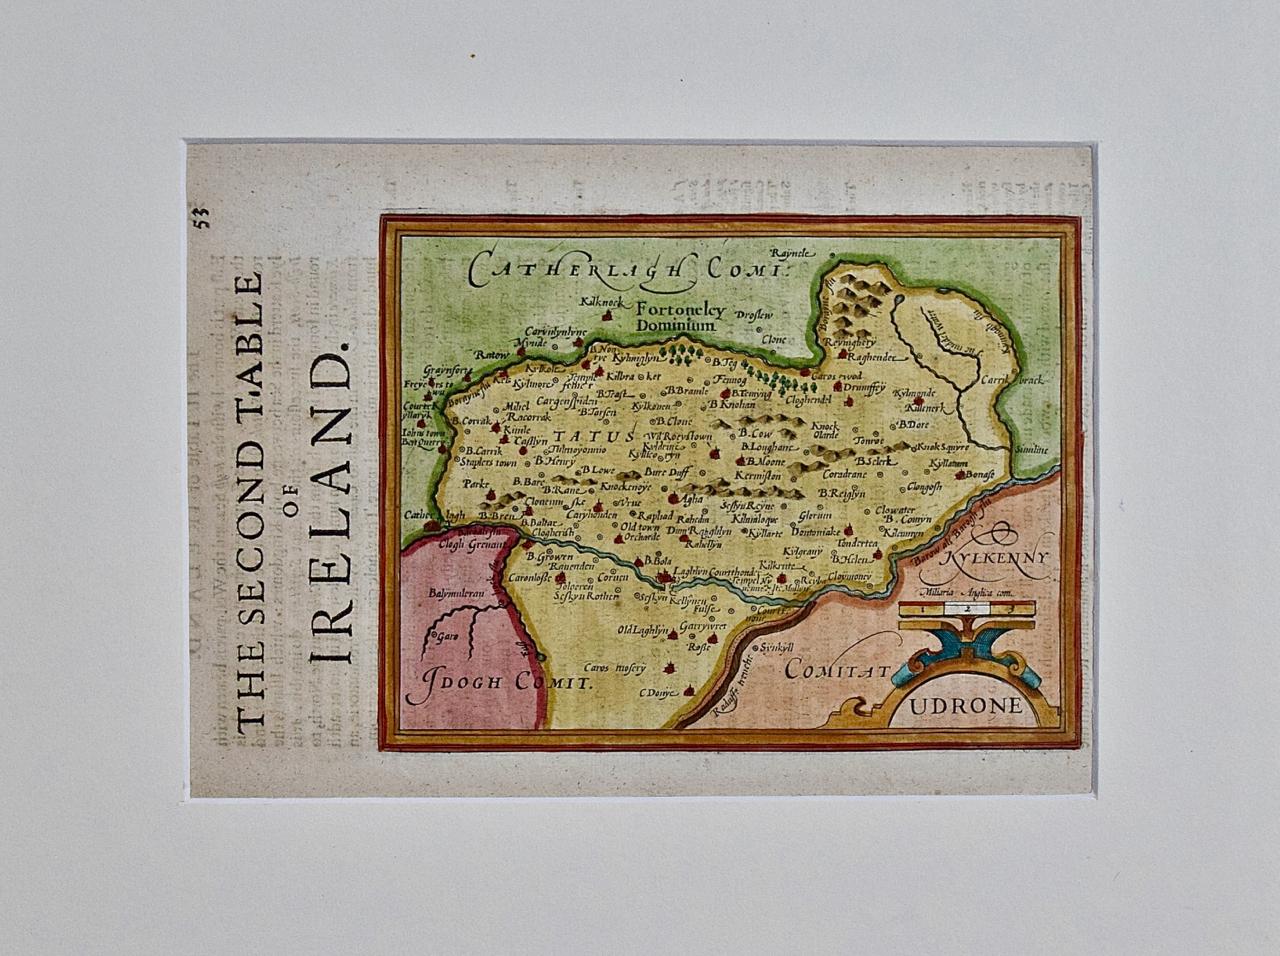 Irlande du Sud-Est : Carte du XVIIe siècle colorée à la main par Mercator et Hondius - Print de Gerard Mercator